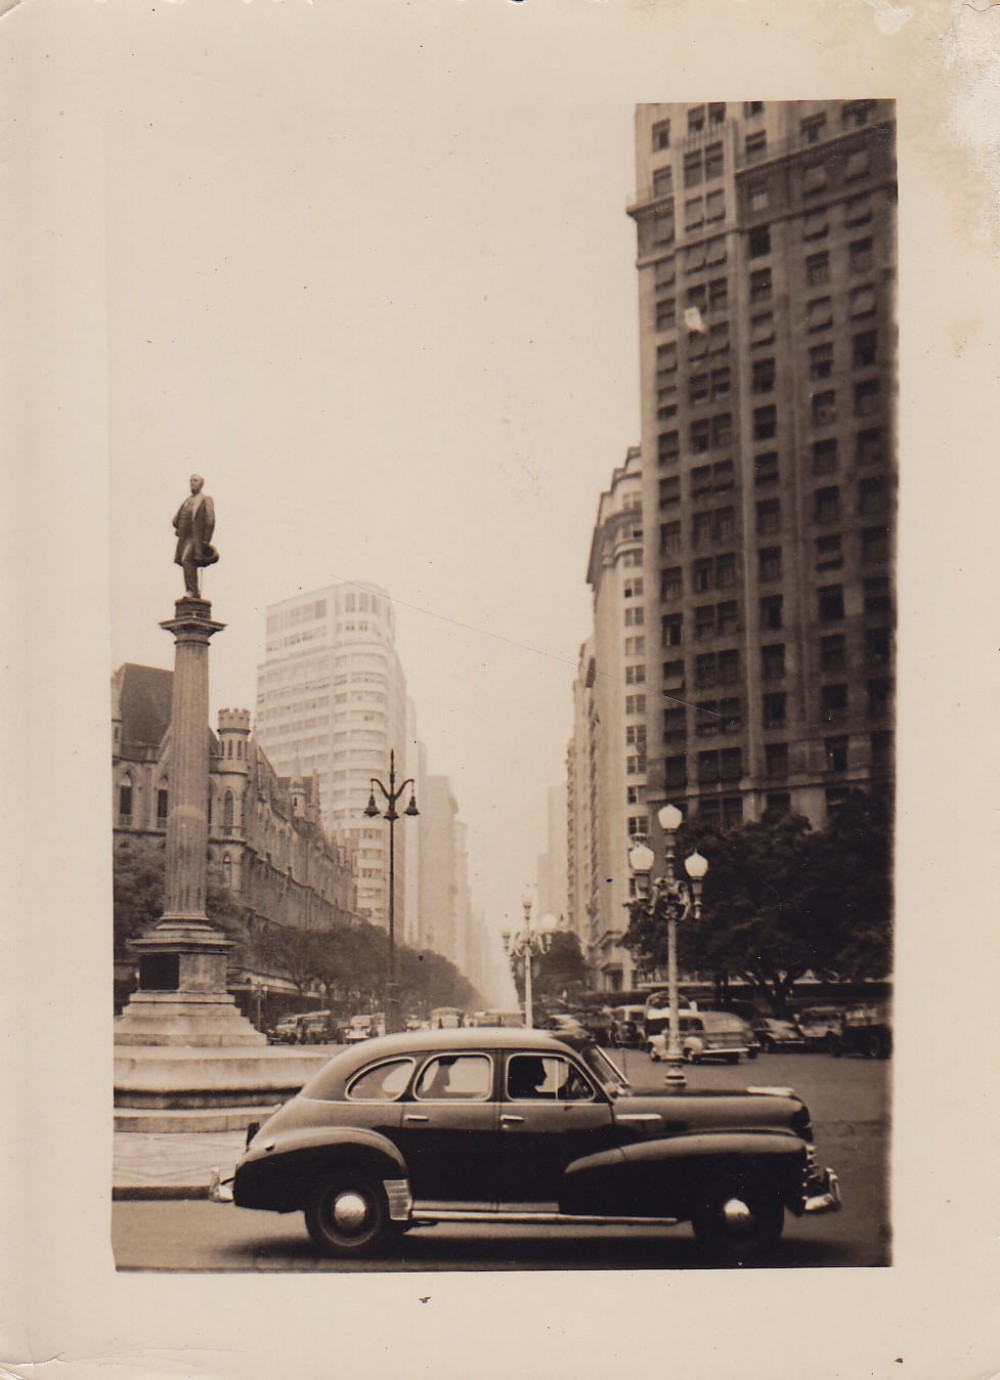 Paminklas miesto aikštėje. Brazilija, apie 1946–1950 m.